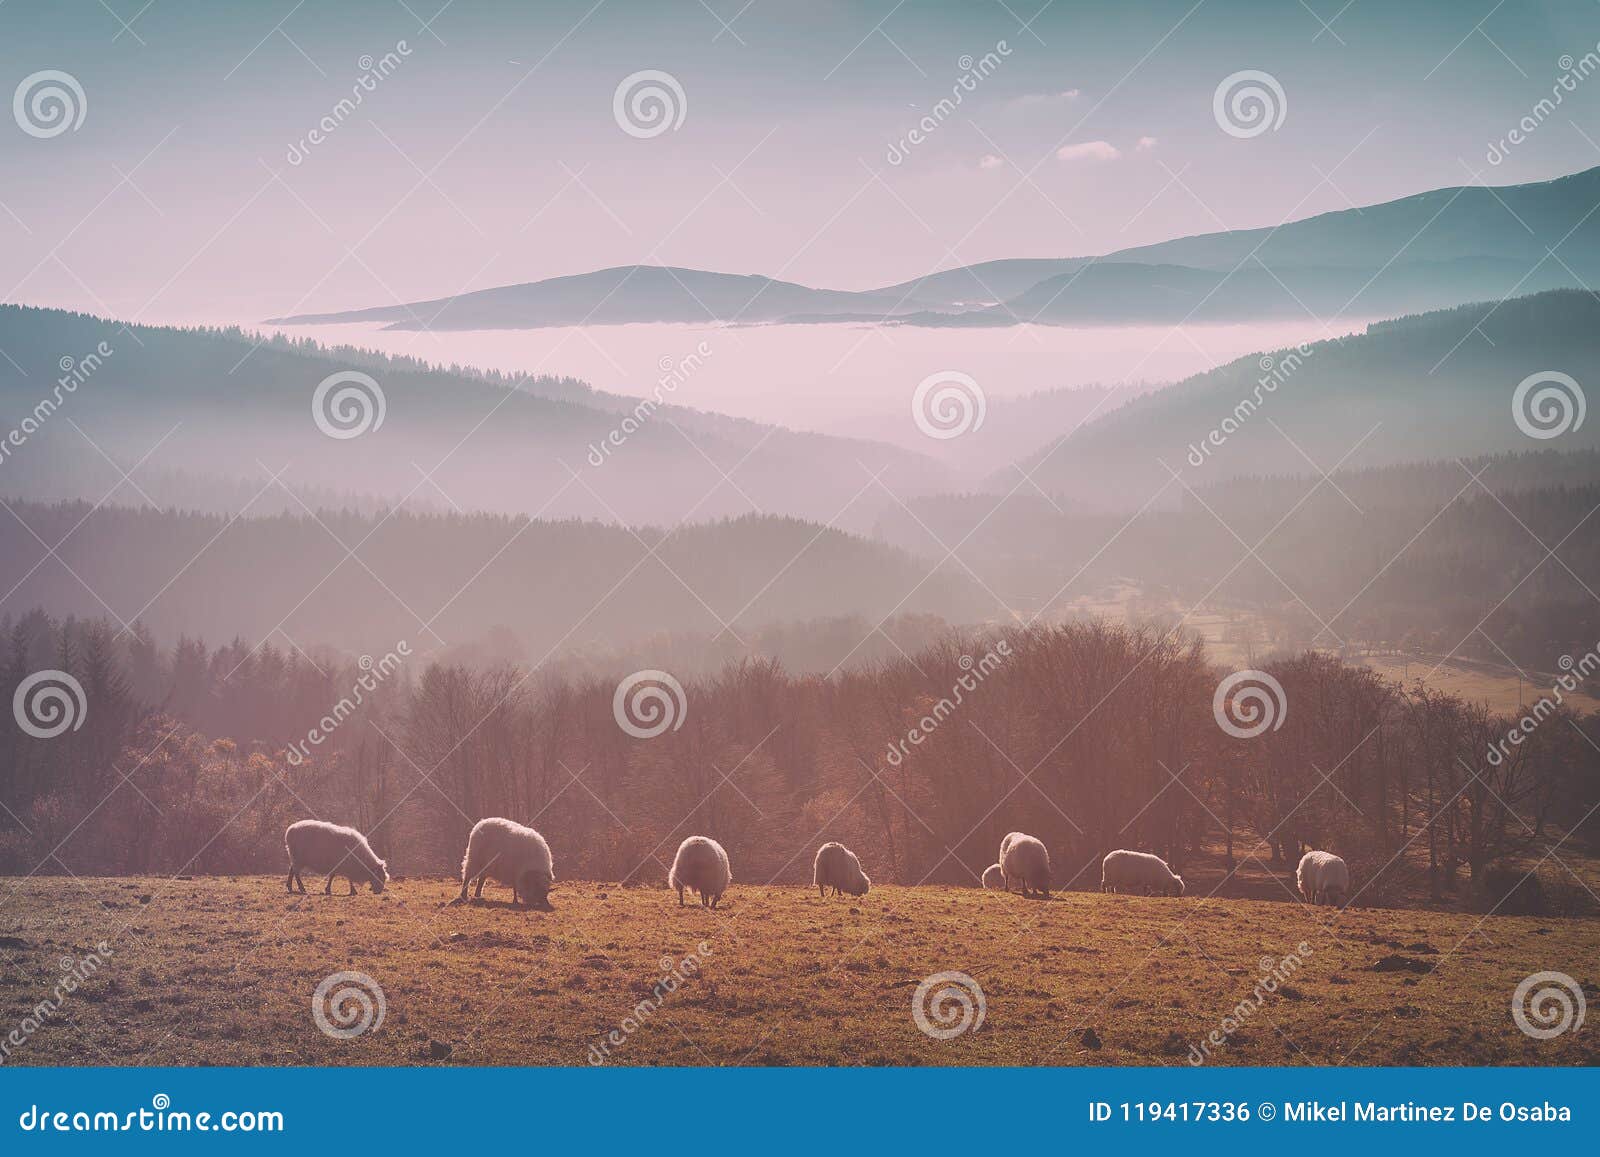 vintage flock of sheep